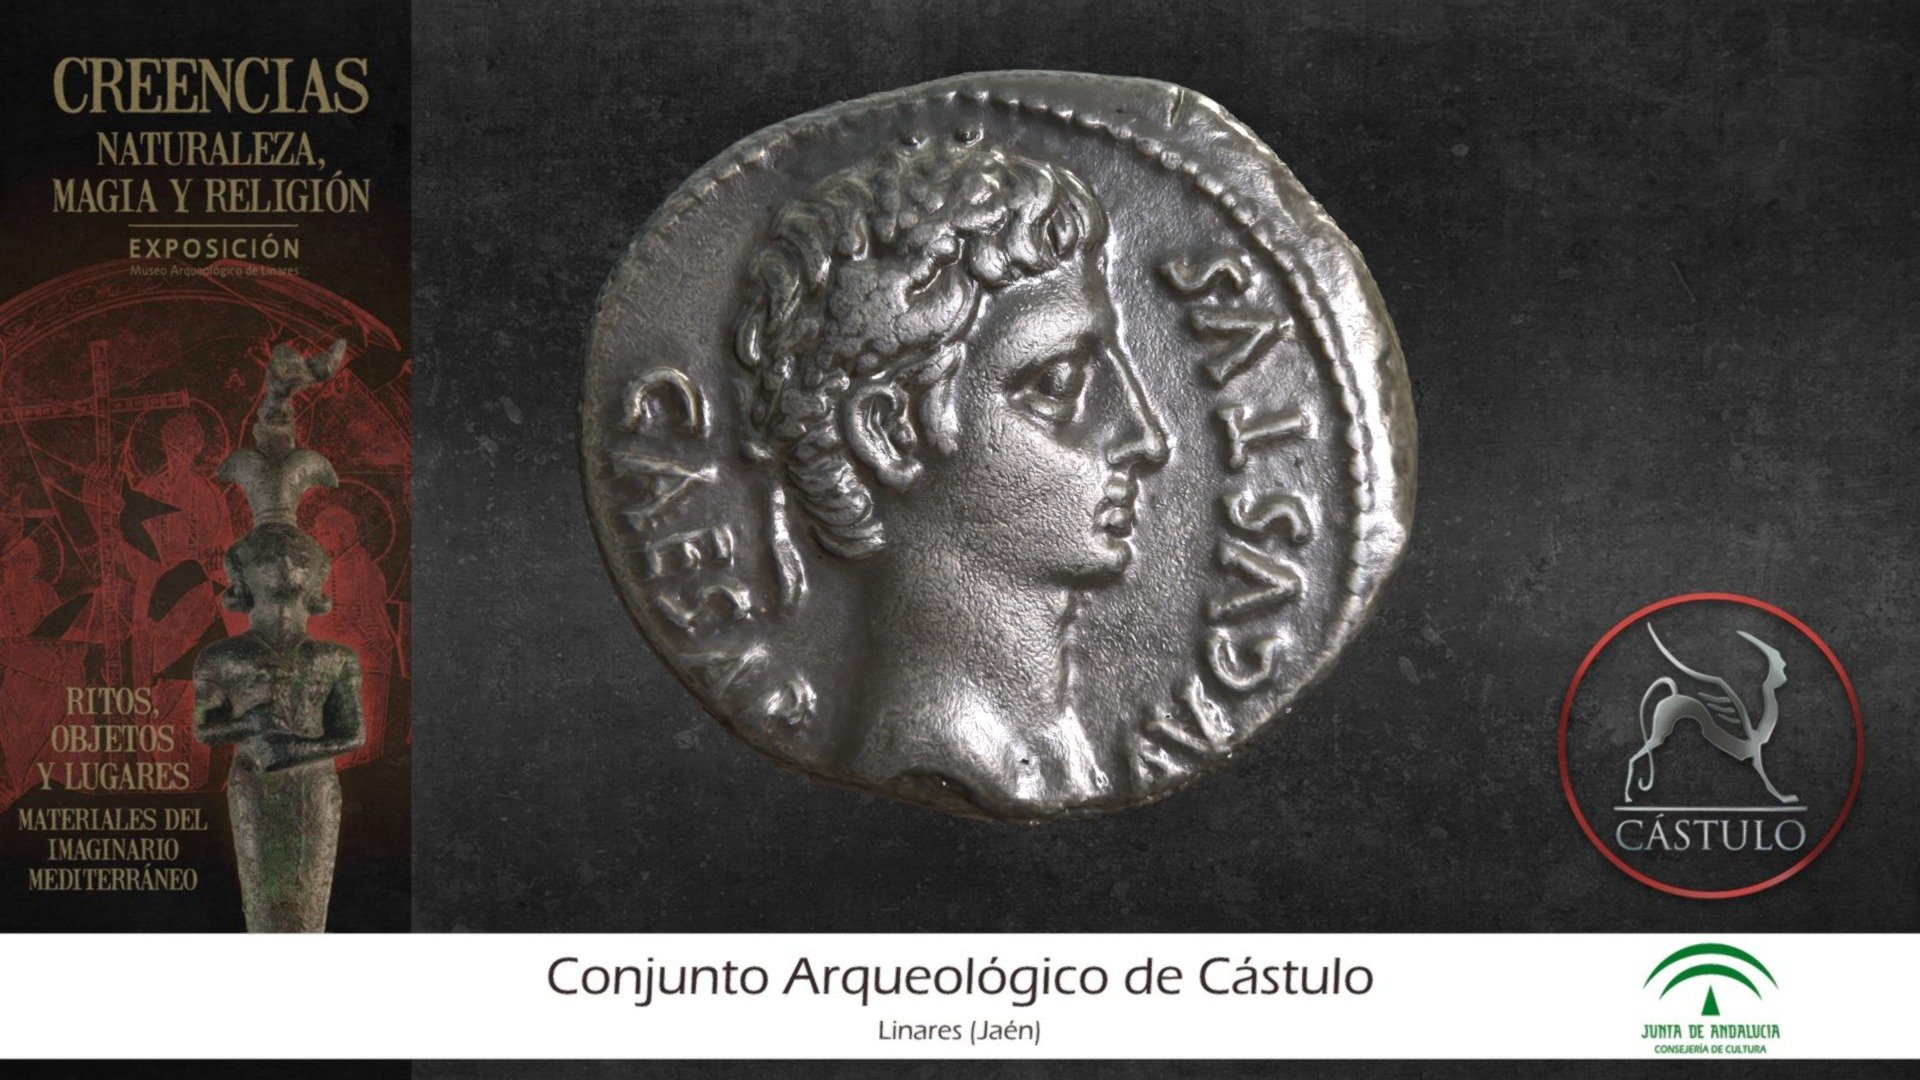 Este denario de plata acuñado en Caesaragusta (Zaragoza) en época del emperador Augusto fue hallado de forma casual junto a otras muchas monedas pertenecientes a un tesorillo, que se ocultó a principios del siglo I d.C.

En el anverso encontramos la cabeza de Augusto con la inscripción CAESAR AVGVSTVS, y en el reverso un cometa radiado y la inscripción DIVVS IVLIVS (Divino Julio).

Este cometa, conocido como “Sidvs Ivlivm” o “Cometa de César” (C/-43 K1), fue visible durante siete días en julio del año 44 a.C. durante la celebración de los “Ludi Victoriae Caesaris”, los juegos funerarios en honor de Julio César, asesinado unos meses antes, hecho que fue interpretado como el ascenso del alma de César a los cielos y su deificación.

El cometa de César puede haber sido el cometa con la luz más brillante registrado en la historia.

Google Arts &amp; Culture - Denario de plata (Siglo I a.C.) - 3D model by Proyecto de Investigación Cástulo Siglo XXI (@Castulo) 3d model